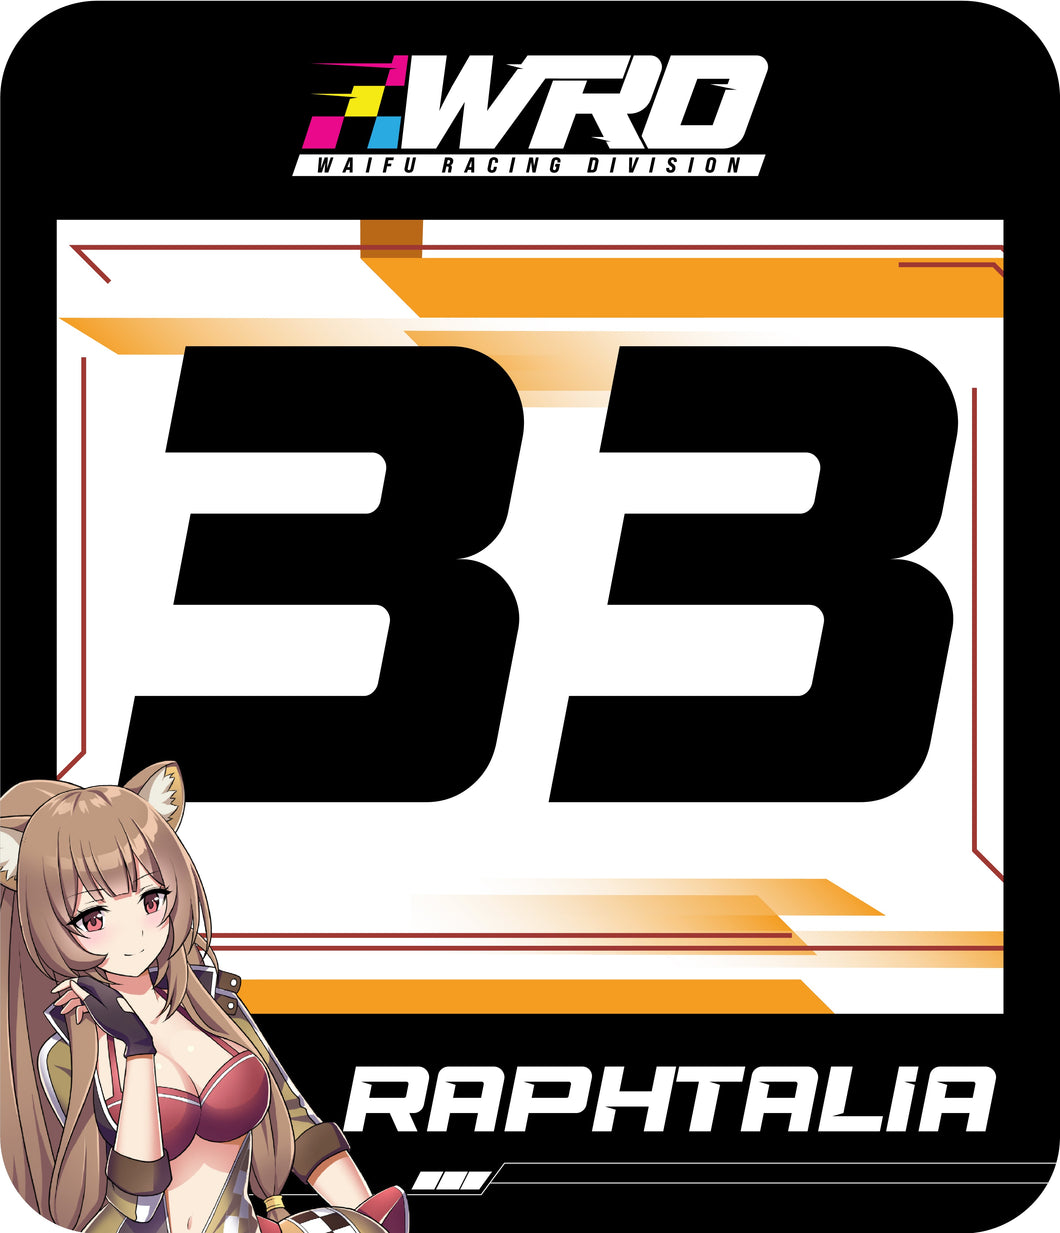 Raphtalia Track Number (Set)